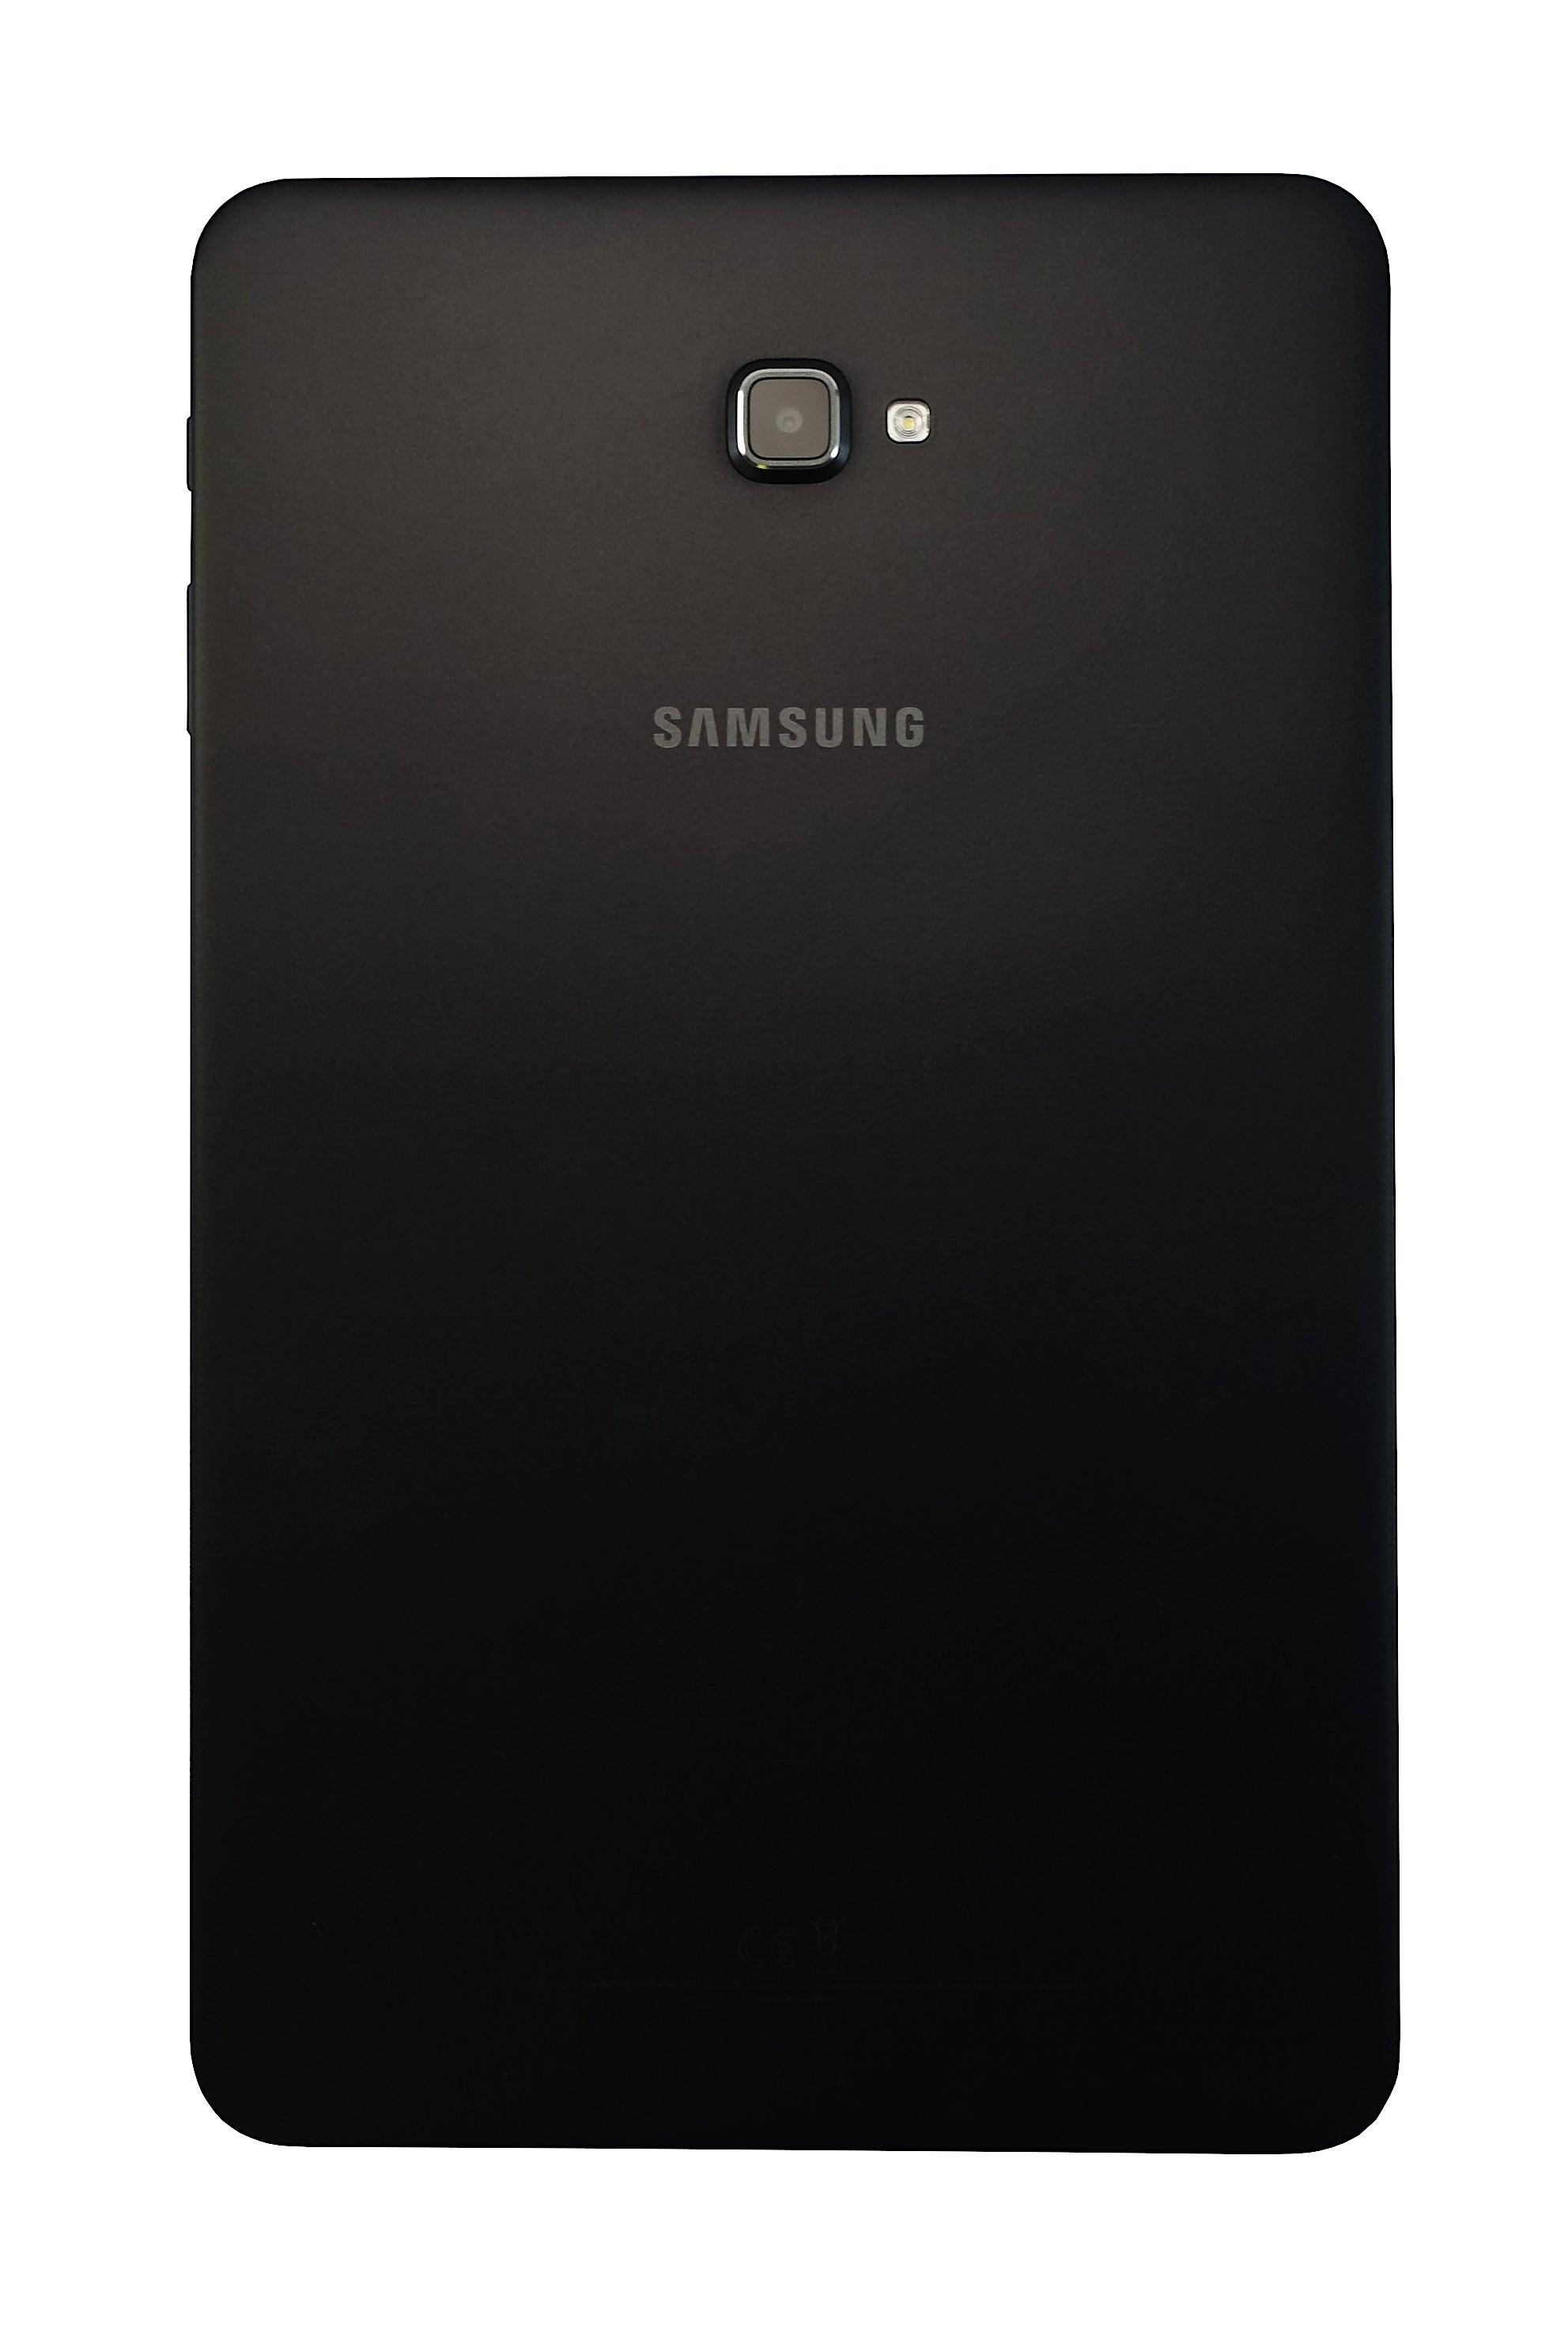 Samsung Galaxy Tab A 2016 Tablet, 10.1", 32GB, WiFi, Black, SM-T580